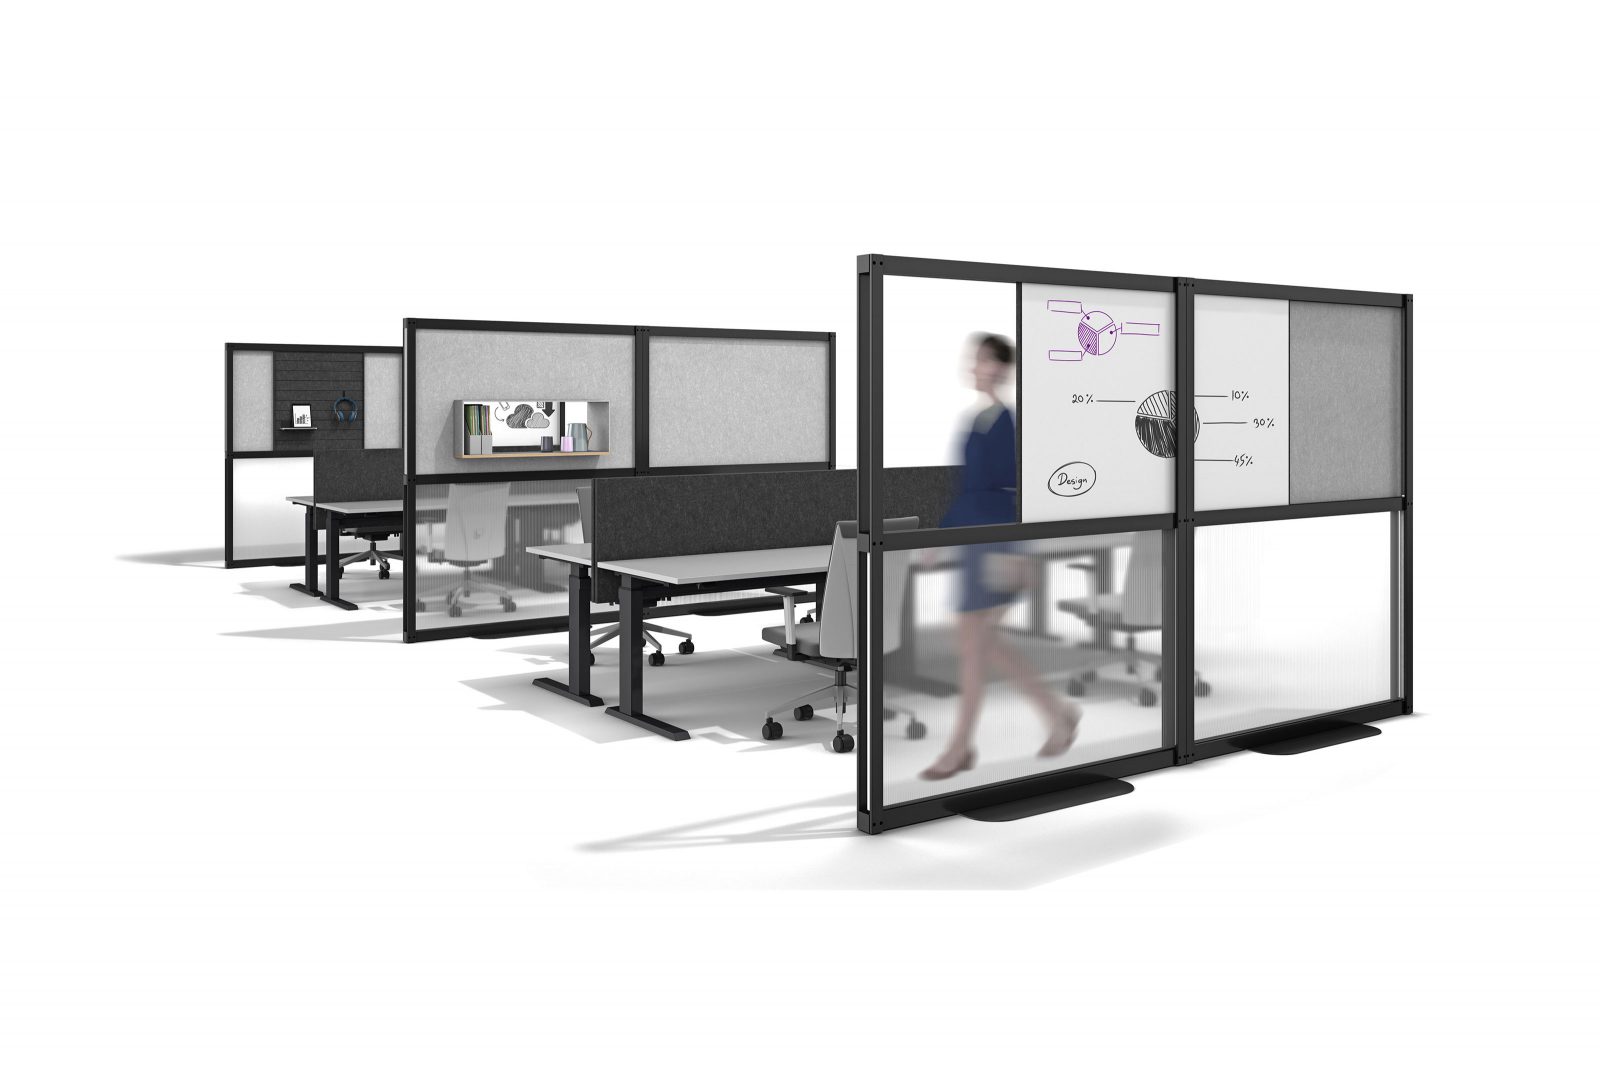 Rendering zeigt zwei Arbeitsbereiche mit je vier Schreibtischen, die von Raumteilern getrennt sind und eine Frau, die durchs Bild läuft